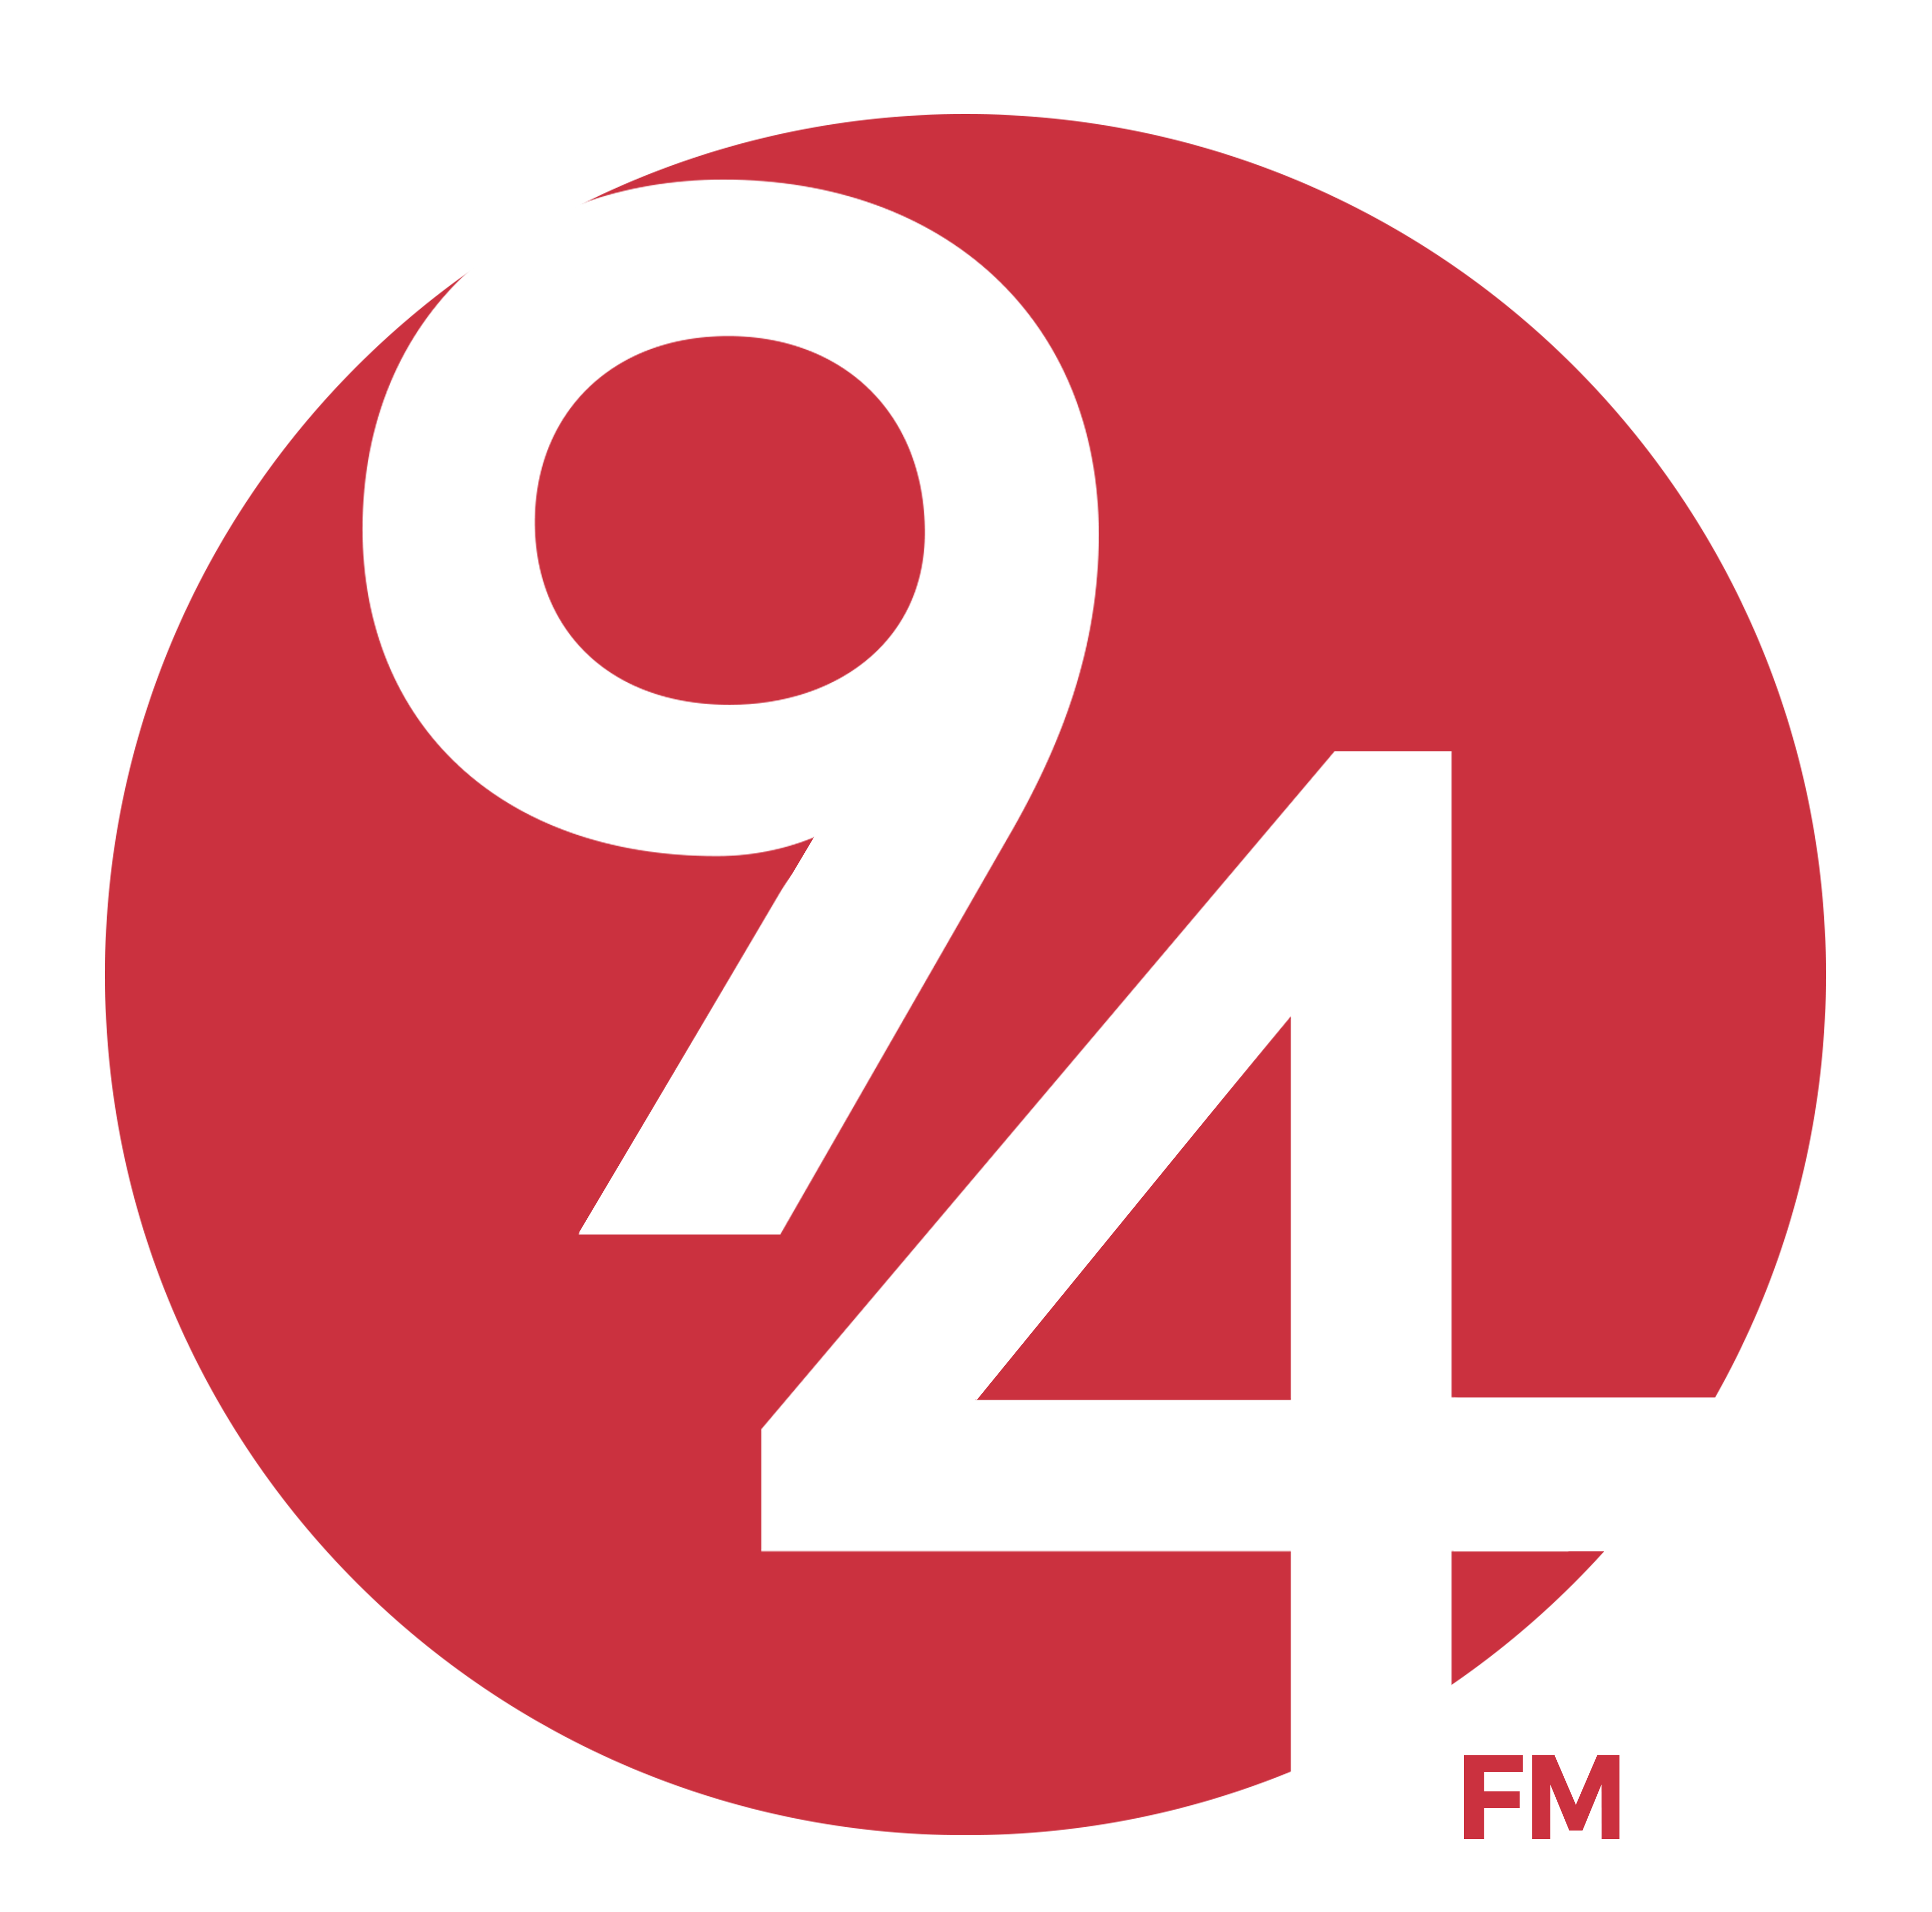 94FM